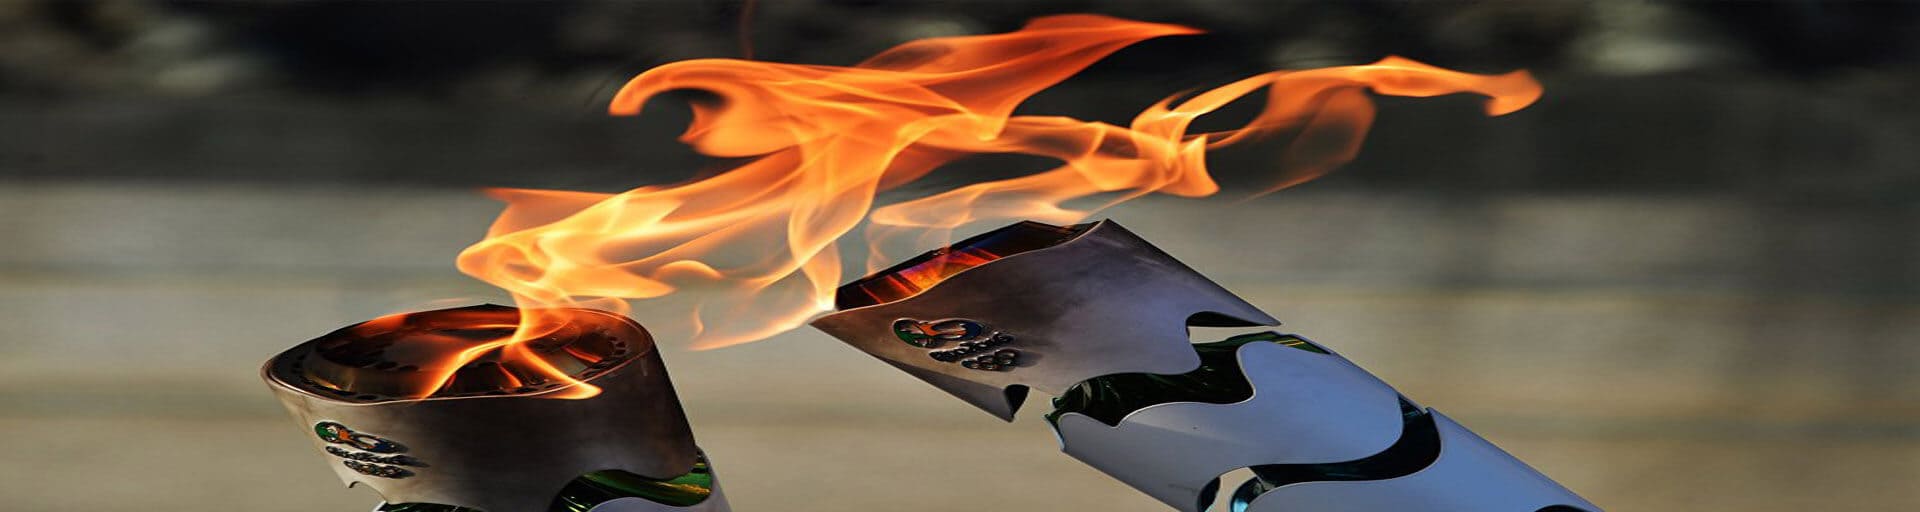 Олимпийский огонь: история, эстафета, интересные факты